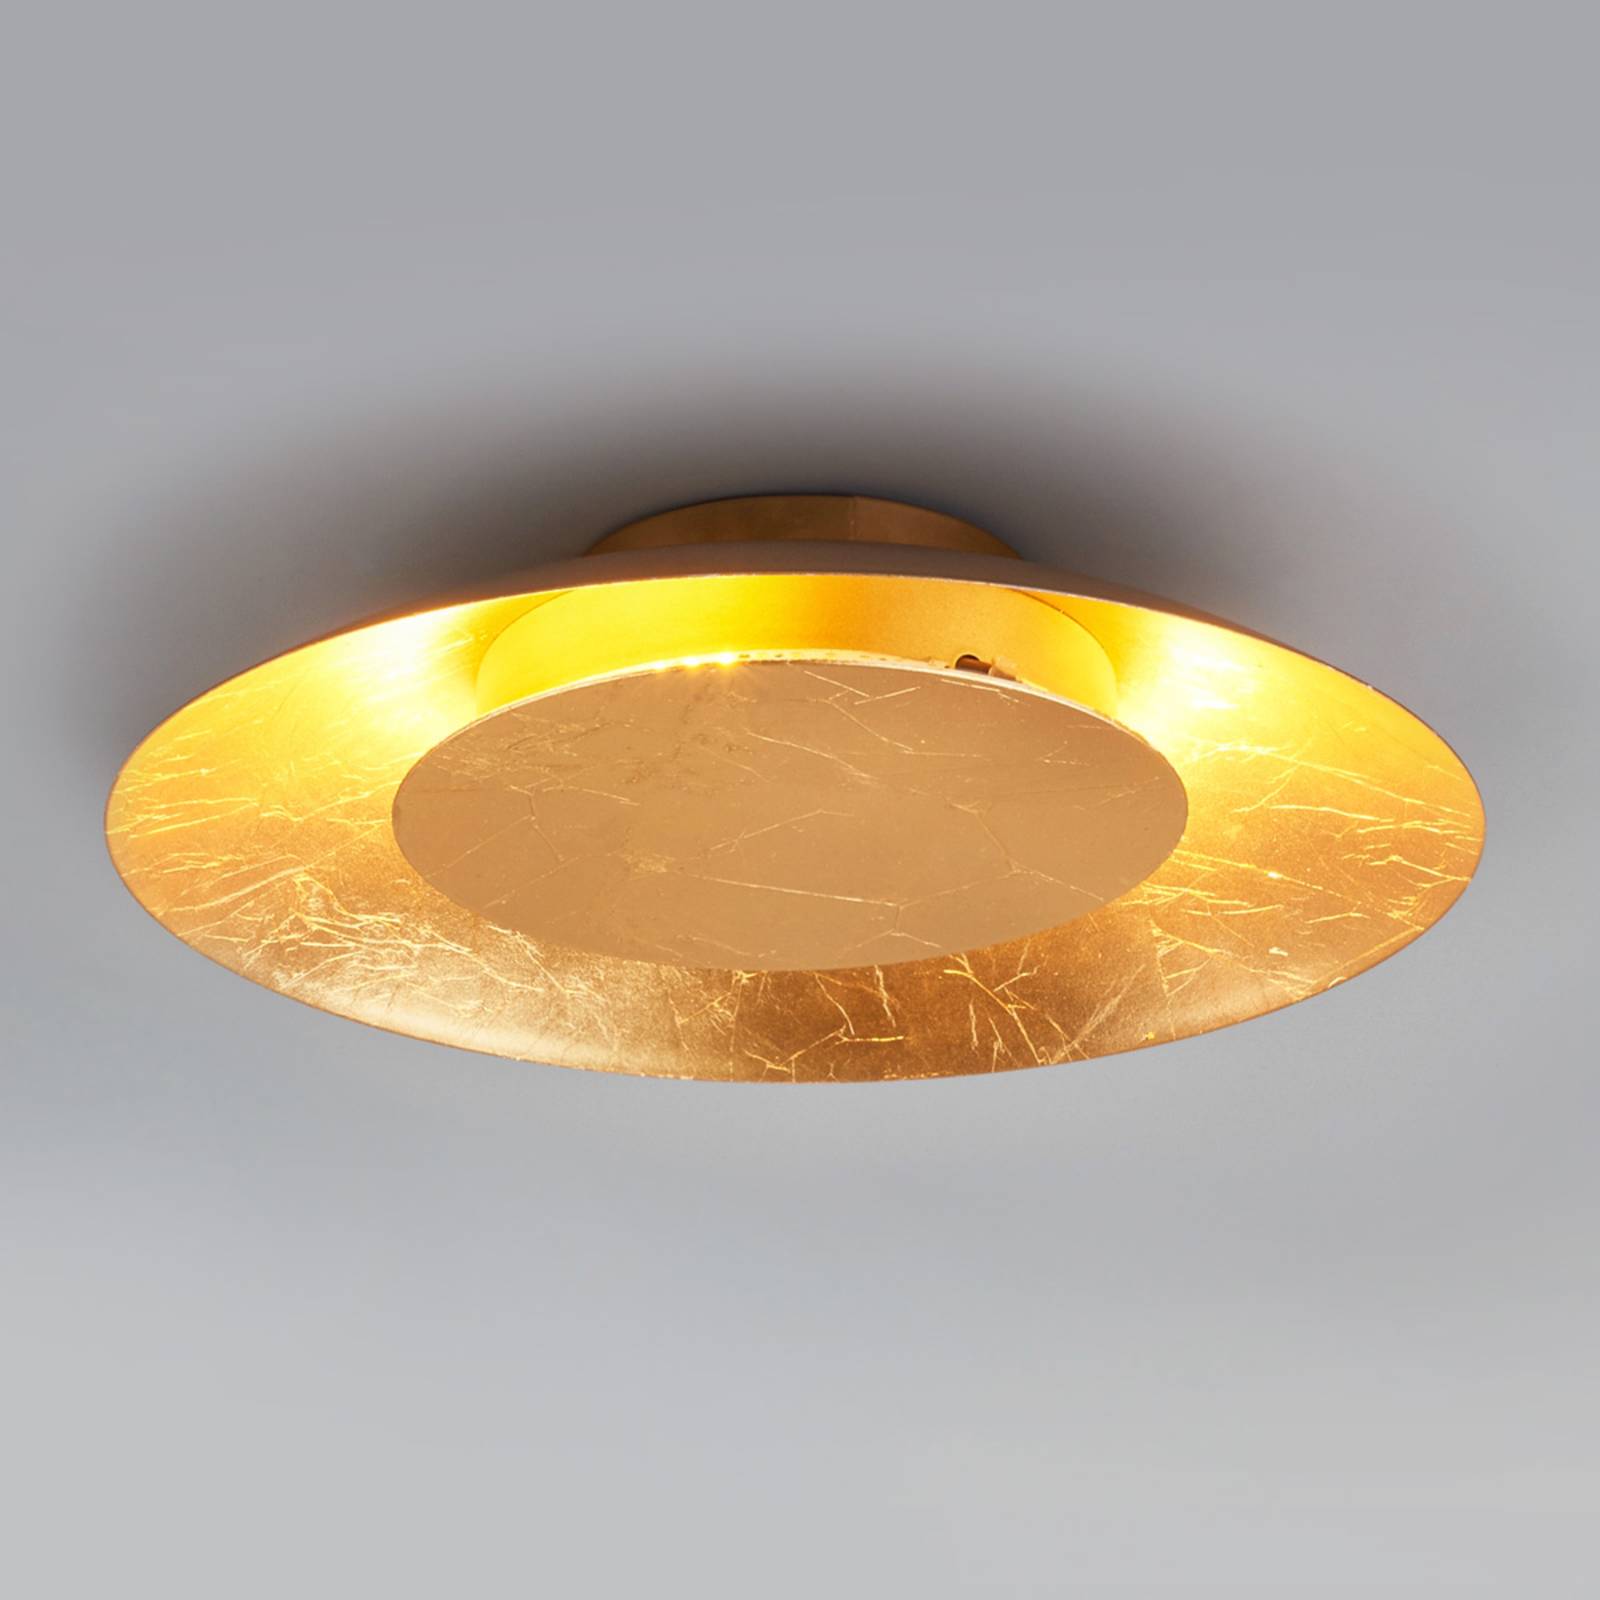 Lampa sufitowa LED Keti złoty wygląd, Ø 34,5 cm